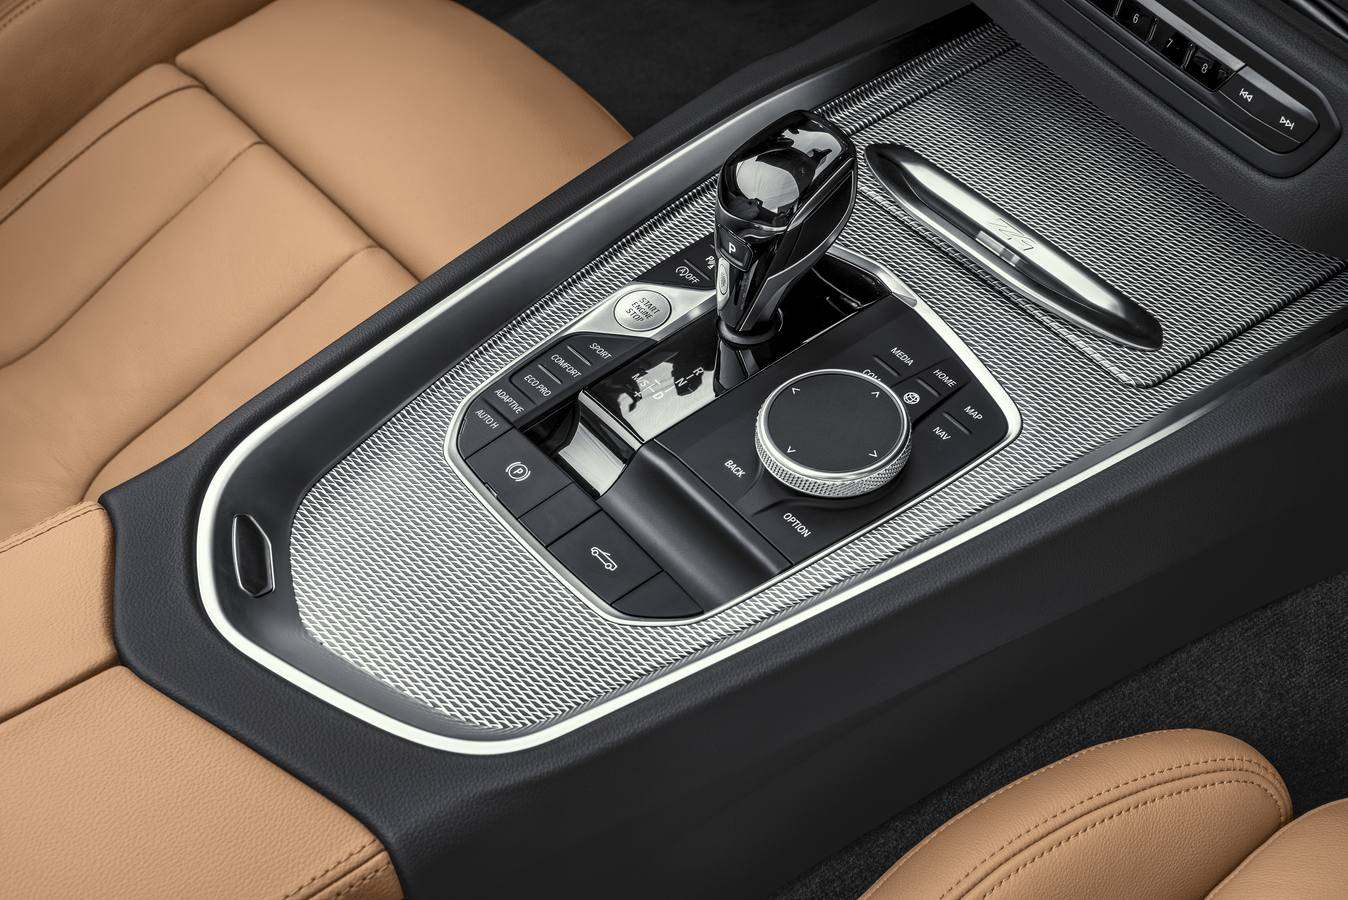 Los «roadsters» o biplazas descapotables de BMW han destacado como iconos del puro placer de conducción. Ahora, el nuevo Z4 se une a este salón de la fama de la firma bávara. Un cabrio con capota clásica de lona que cuesta desde 48.900 euros.